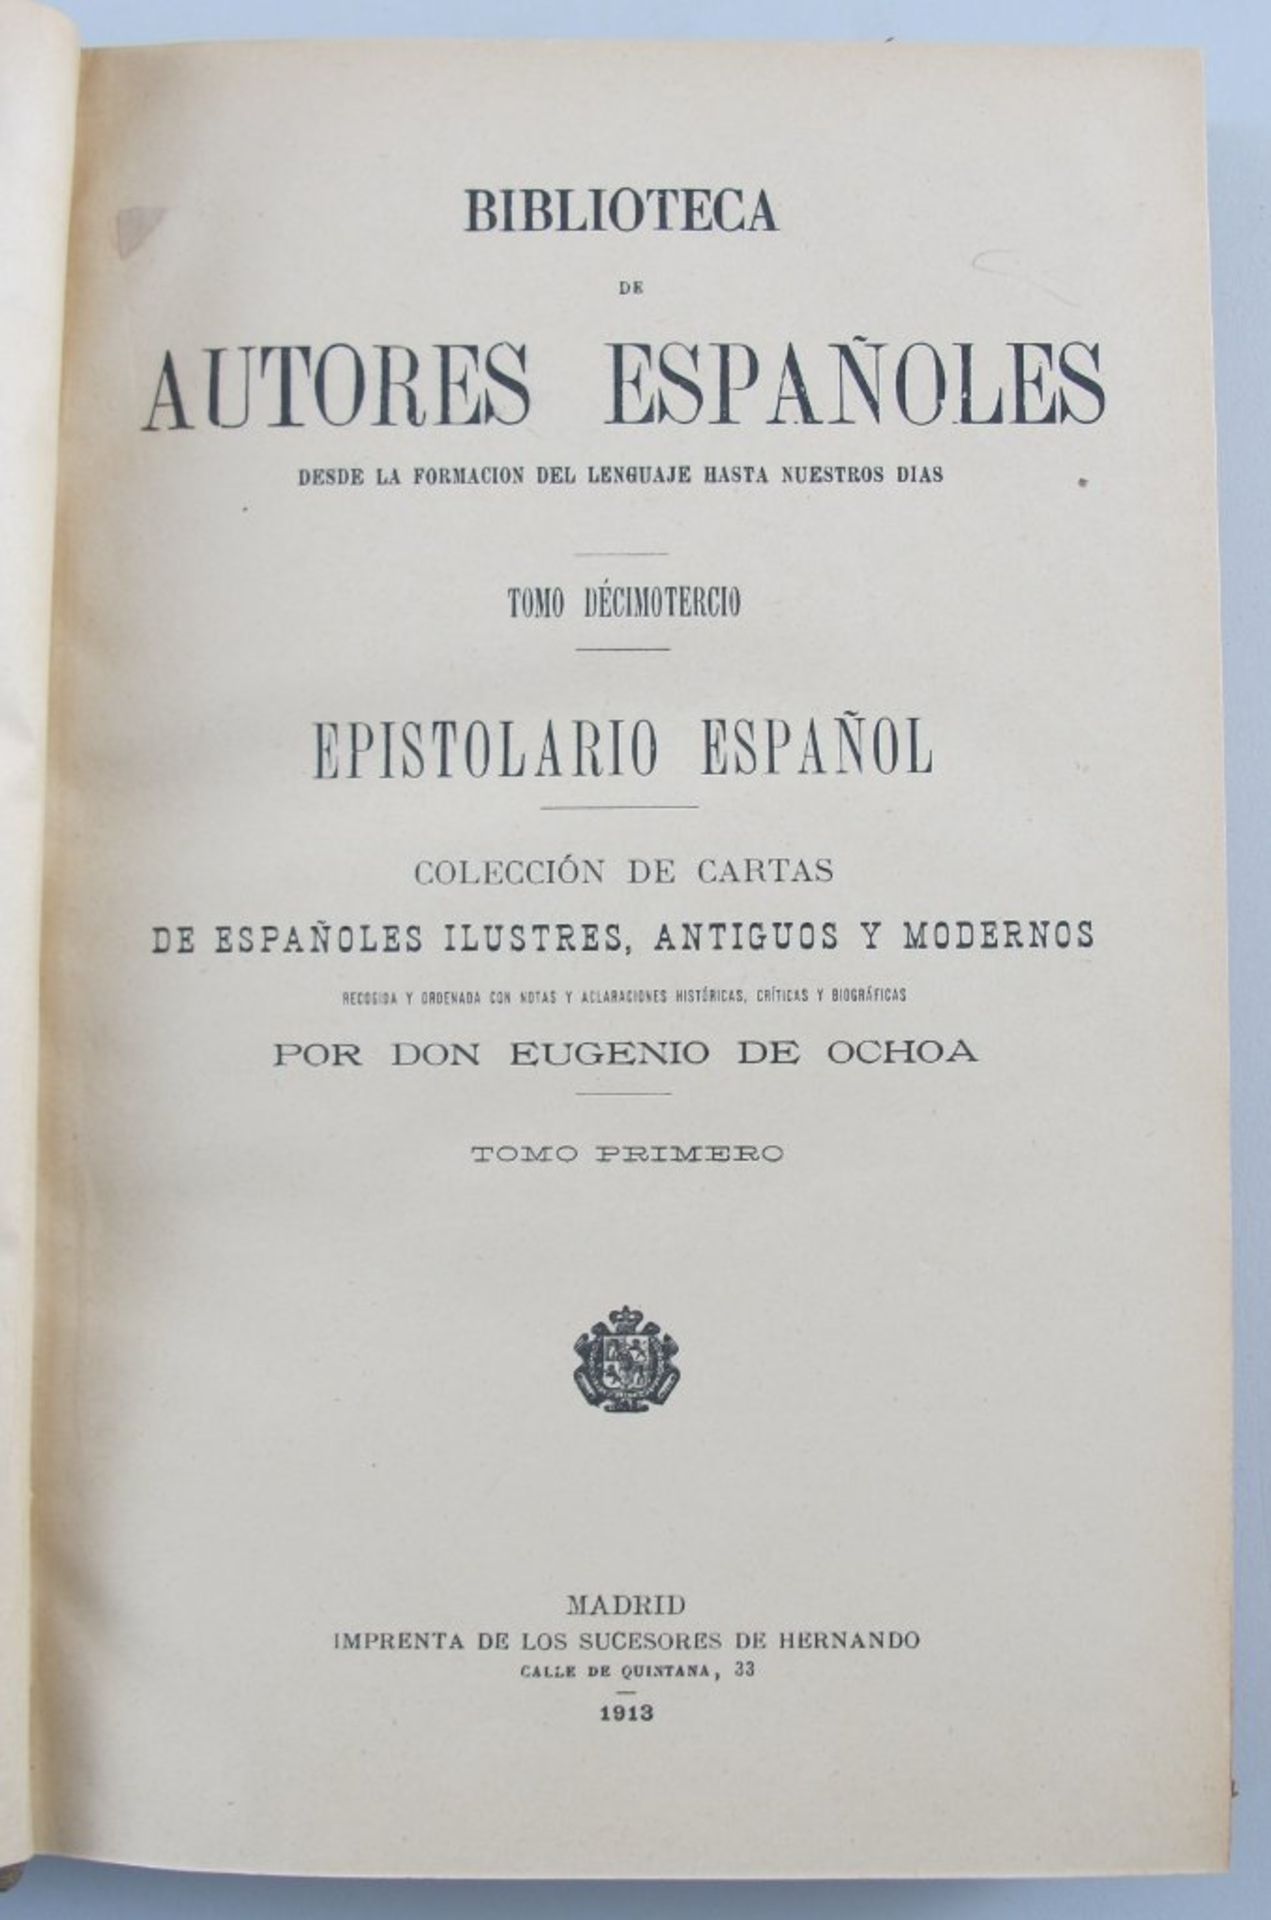 Biblioteca de Autores Espanoles. Desde la Formacion del Lenguaje Hasta Nuestros Dias. Madrid: M.